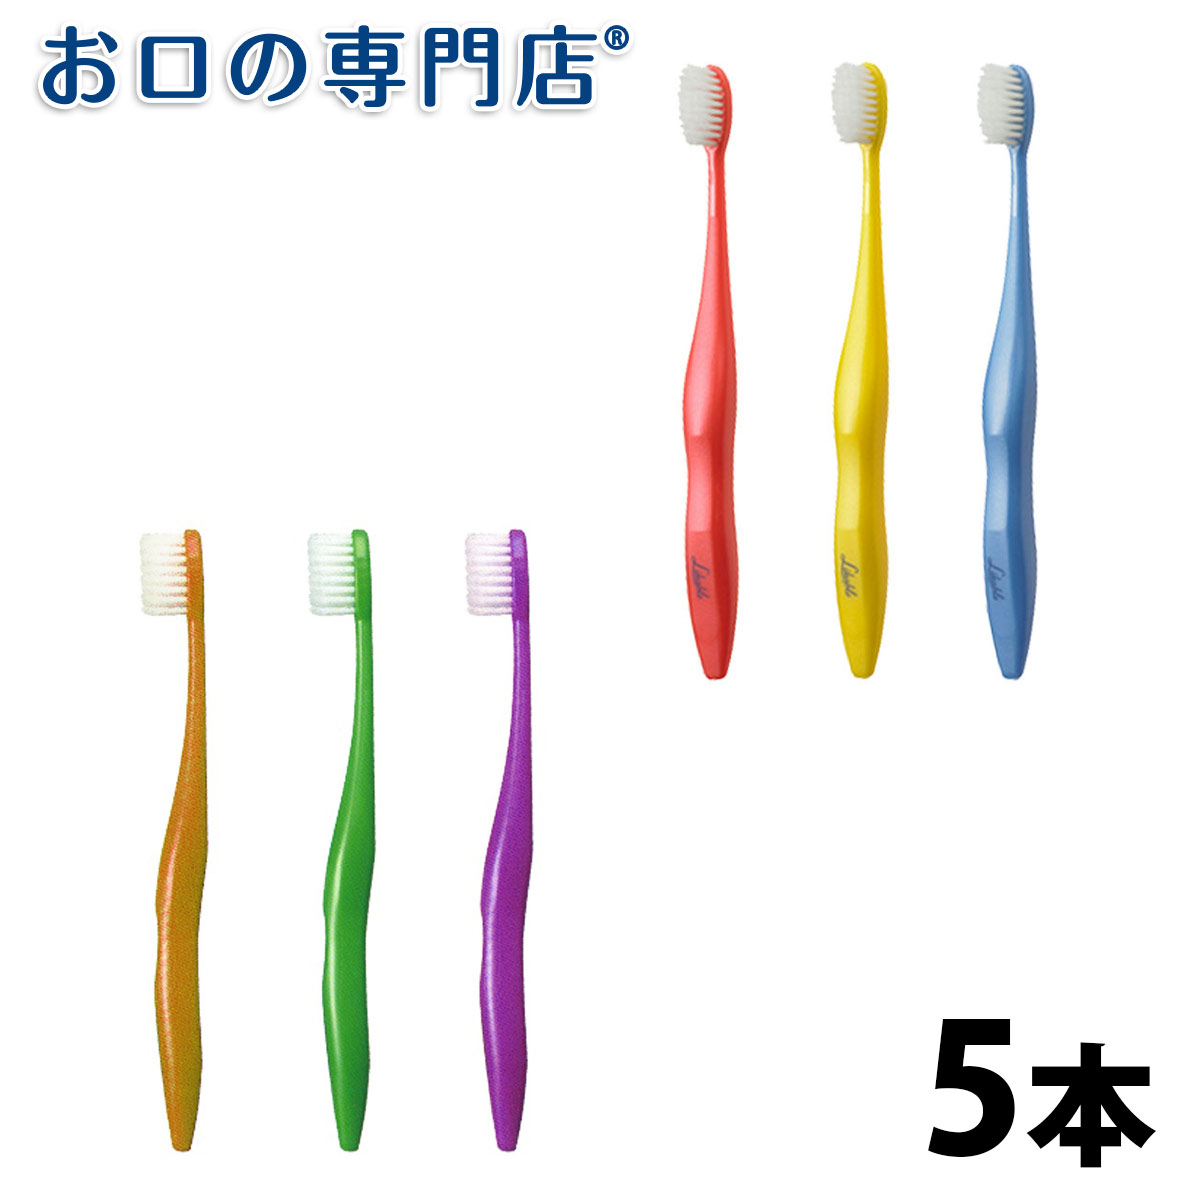 【送料無料】日本製 歯ブラシ ライカブル 5本【ライカブル】【2色以上のアソート】